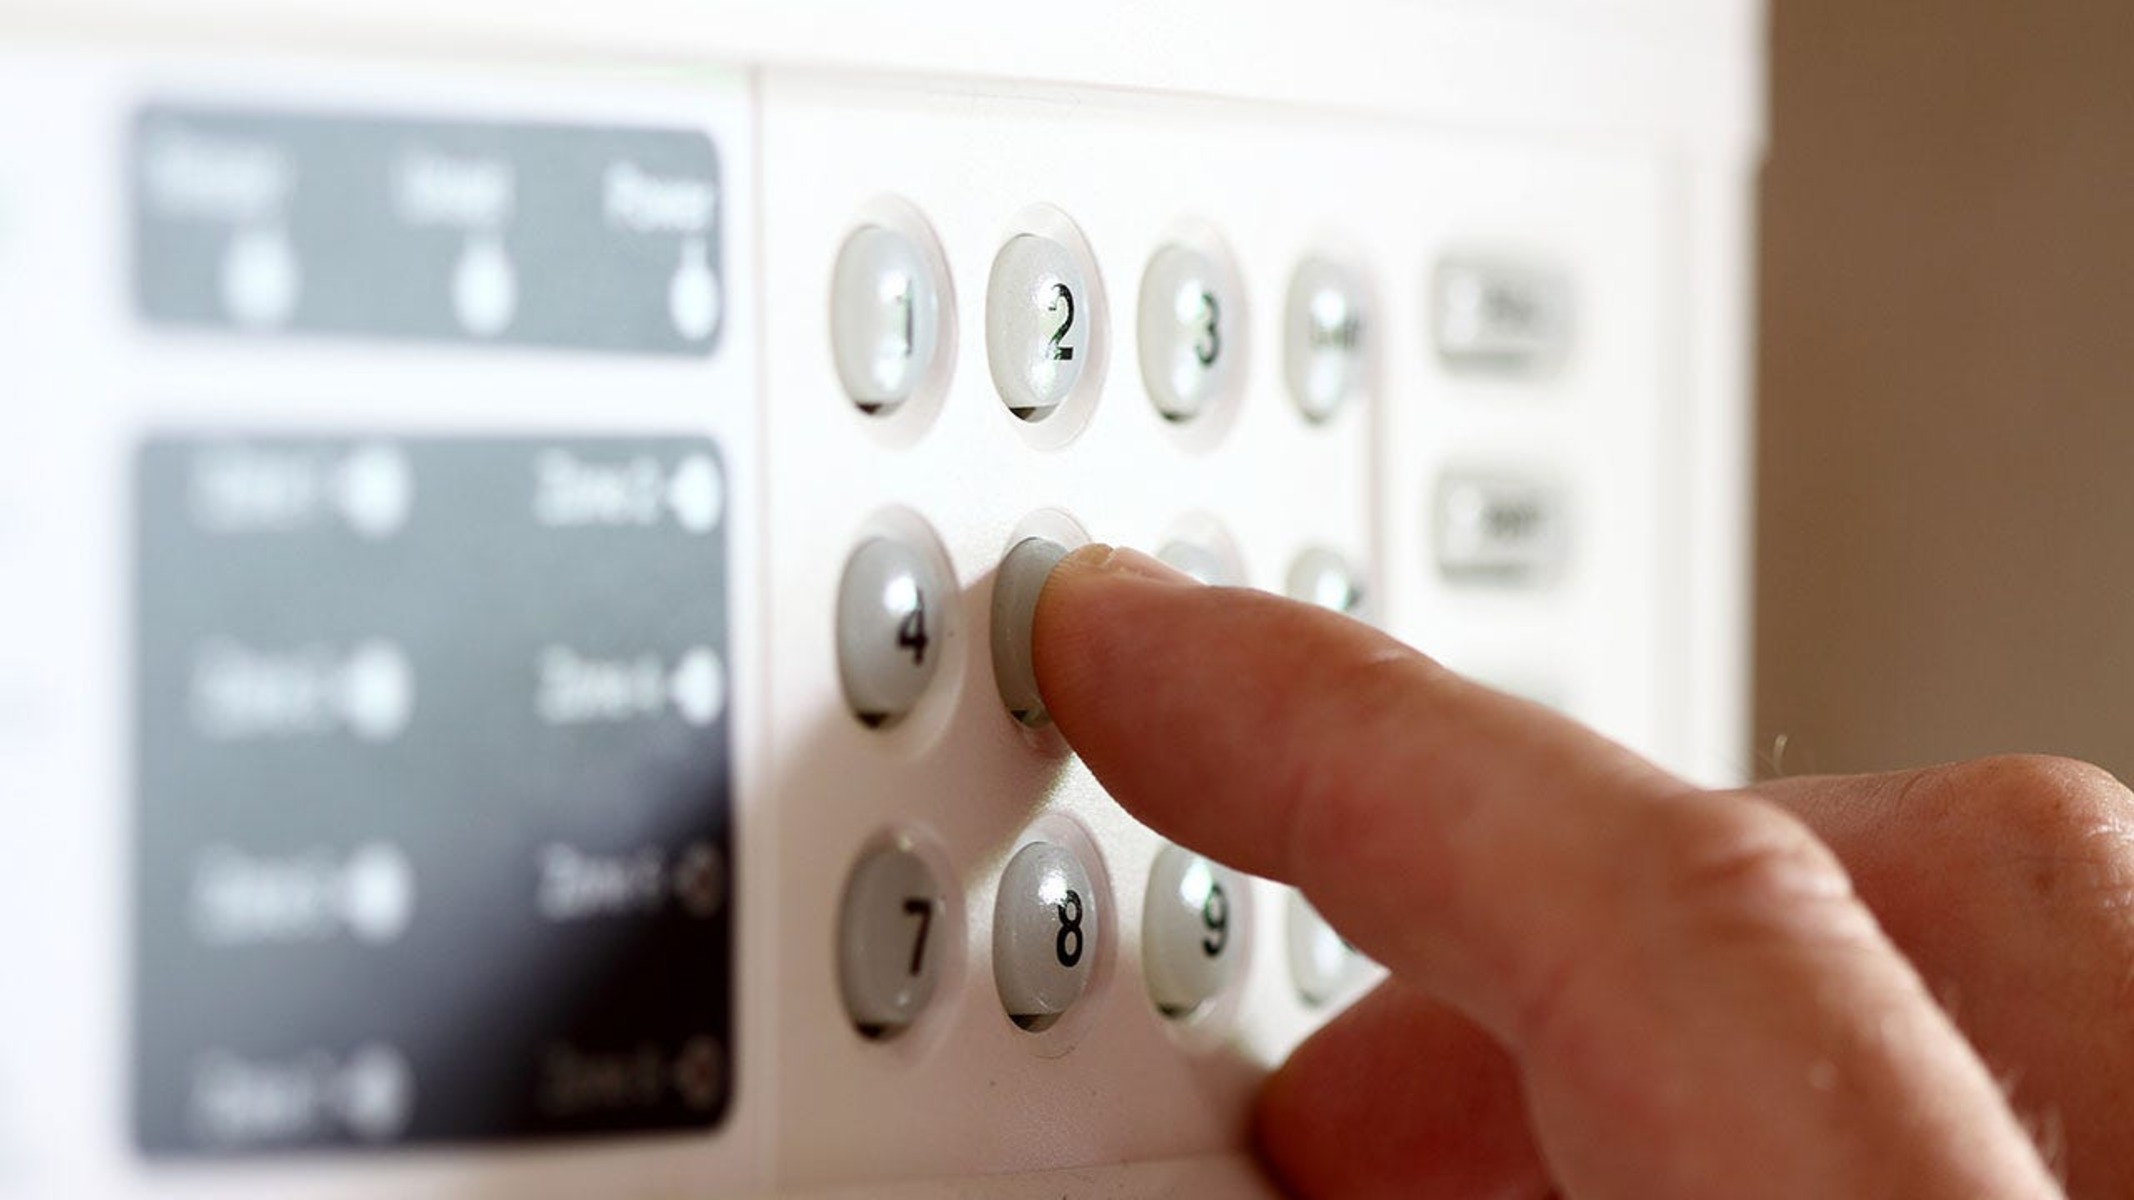 Alarm install. Intruder Alarm. Пульт охранной сигнализации в квартире. Охранная сигнализация для дома. Монтаж охранной сигнализации.